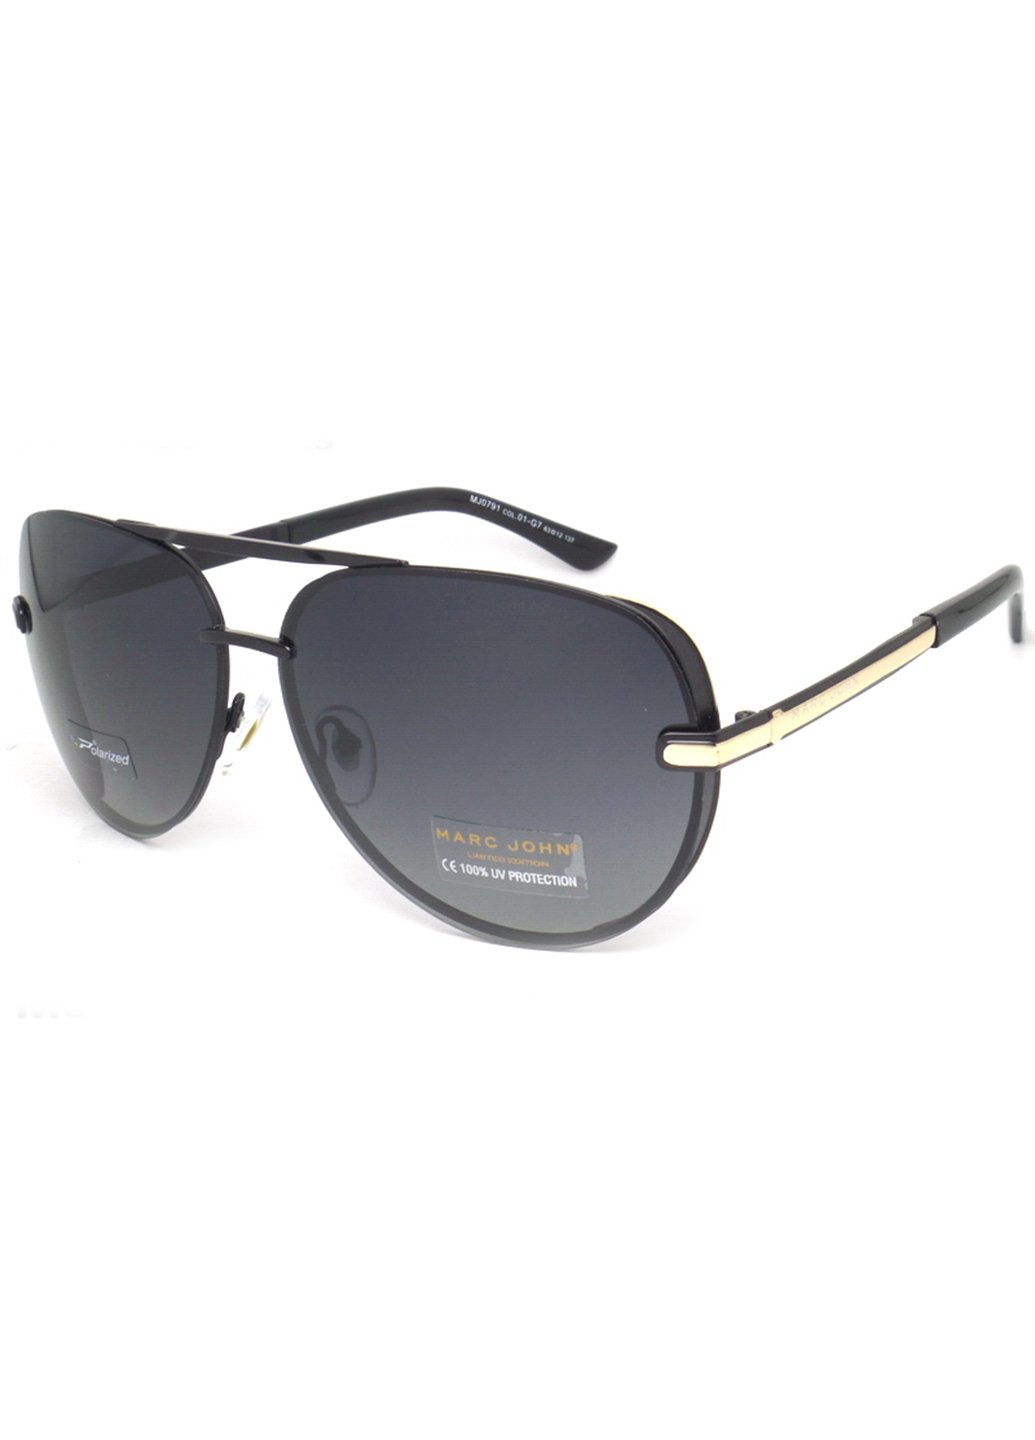 Купить Мужские солнцезащитные очки Marc John с поляризацией MJ0791 190015 - Черный в интернет-магазине